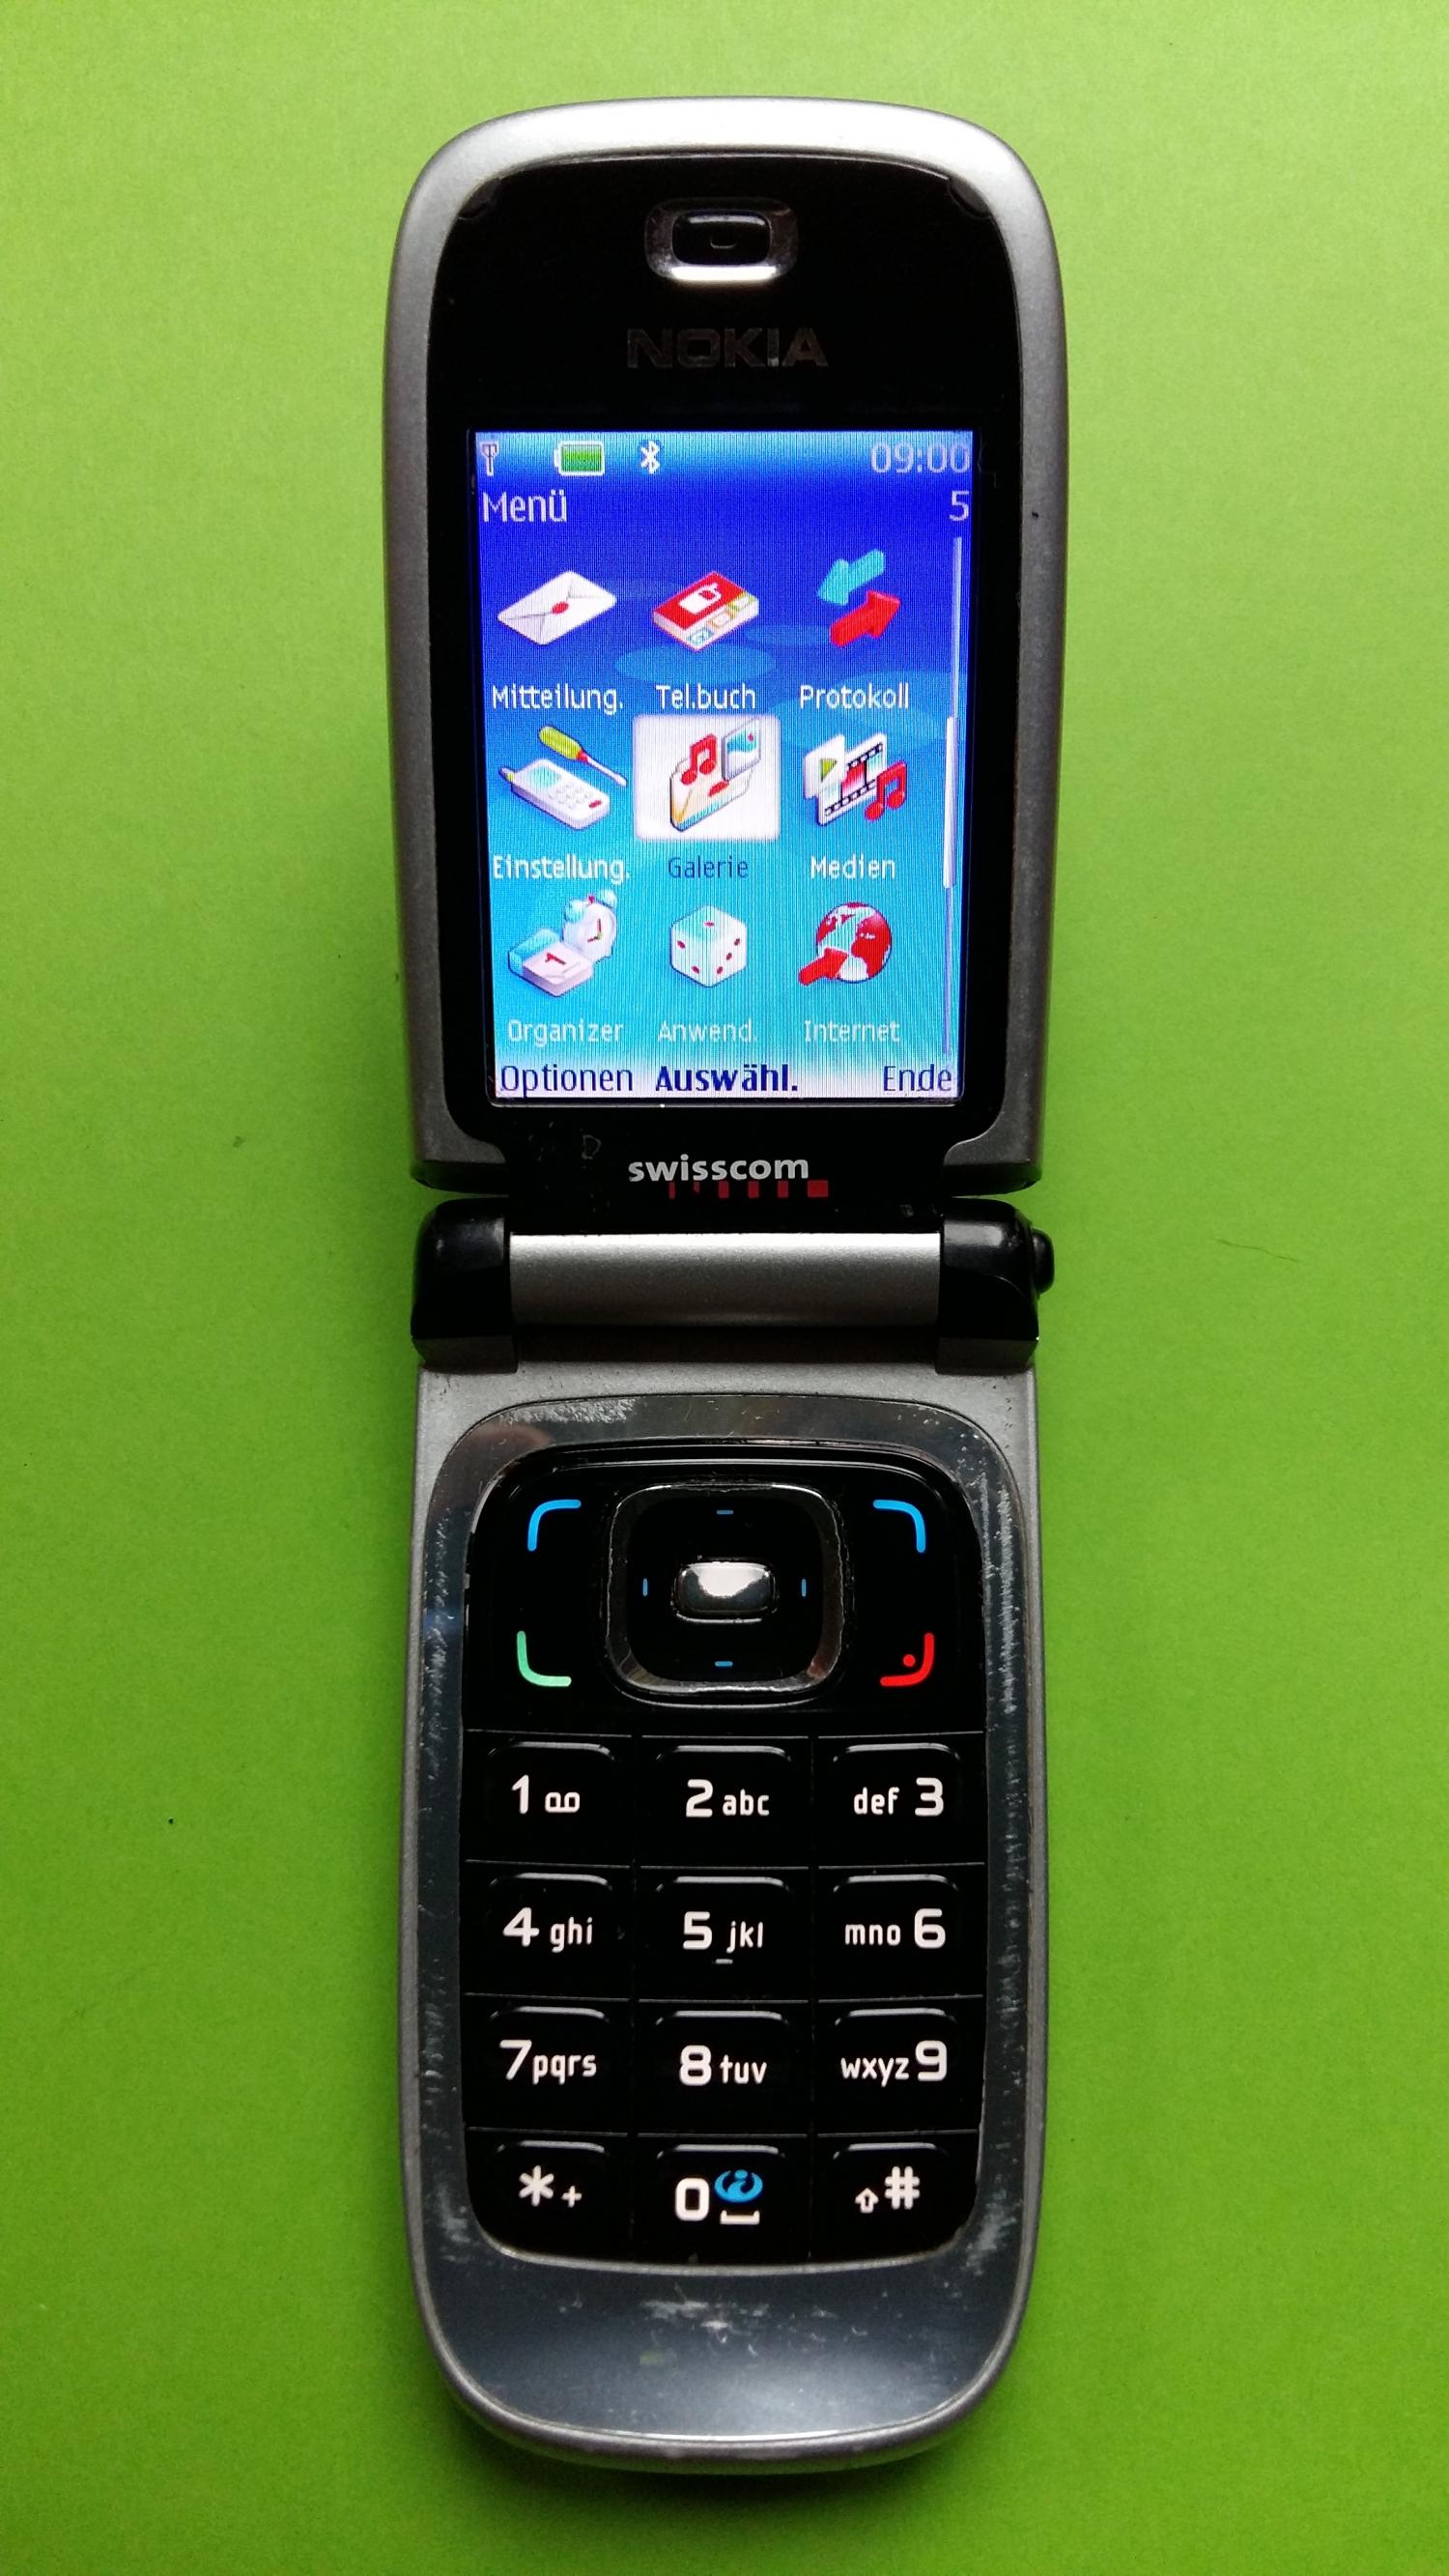 image-7305232-Nokia 6131 (8)2.jpg